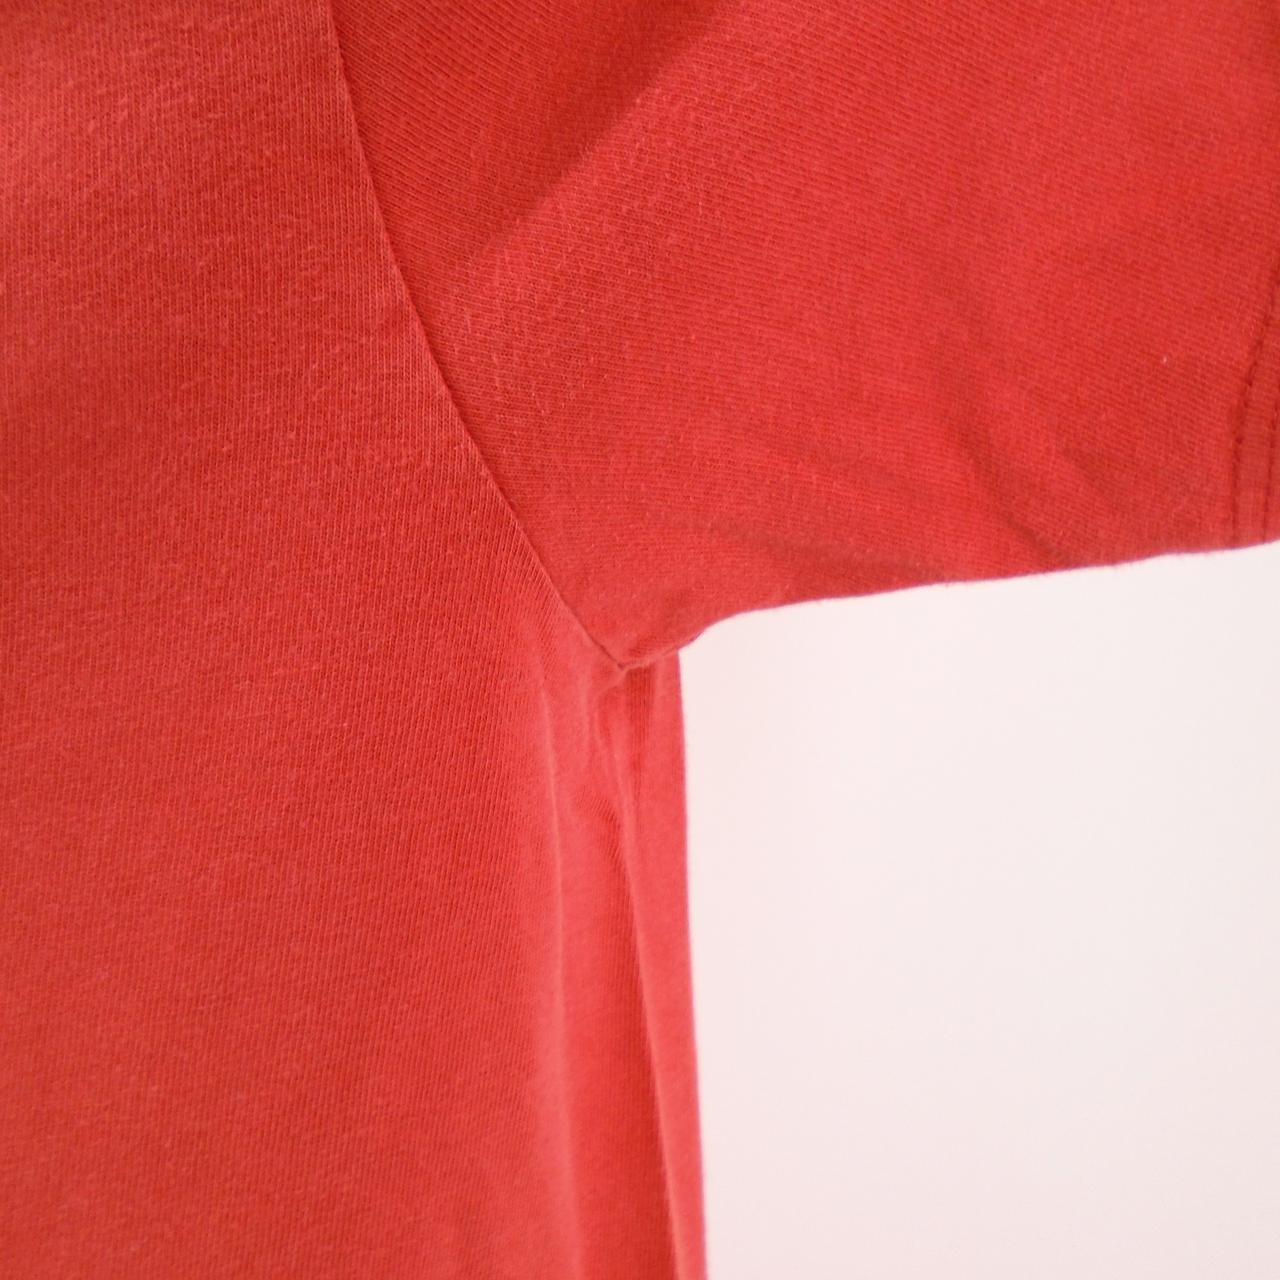 Camiseta Hombre Tommy Hilfiger. Rojo. M. Usado. Satisfactorio